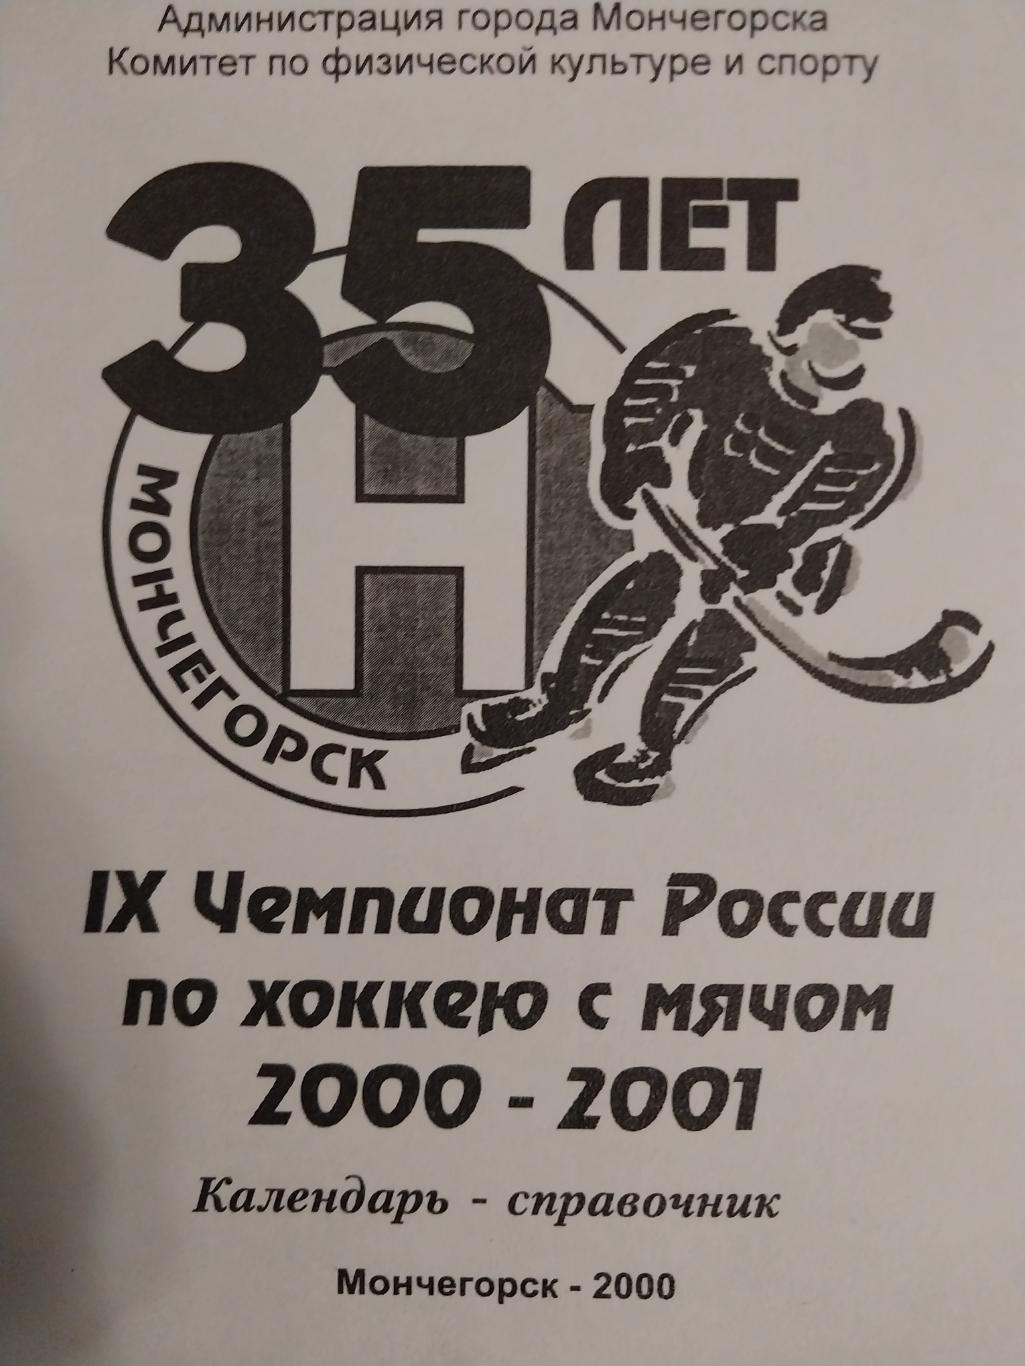 Мончегорск-Североникель, 2000-2001, хоккей с мячом